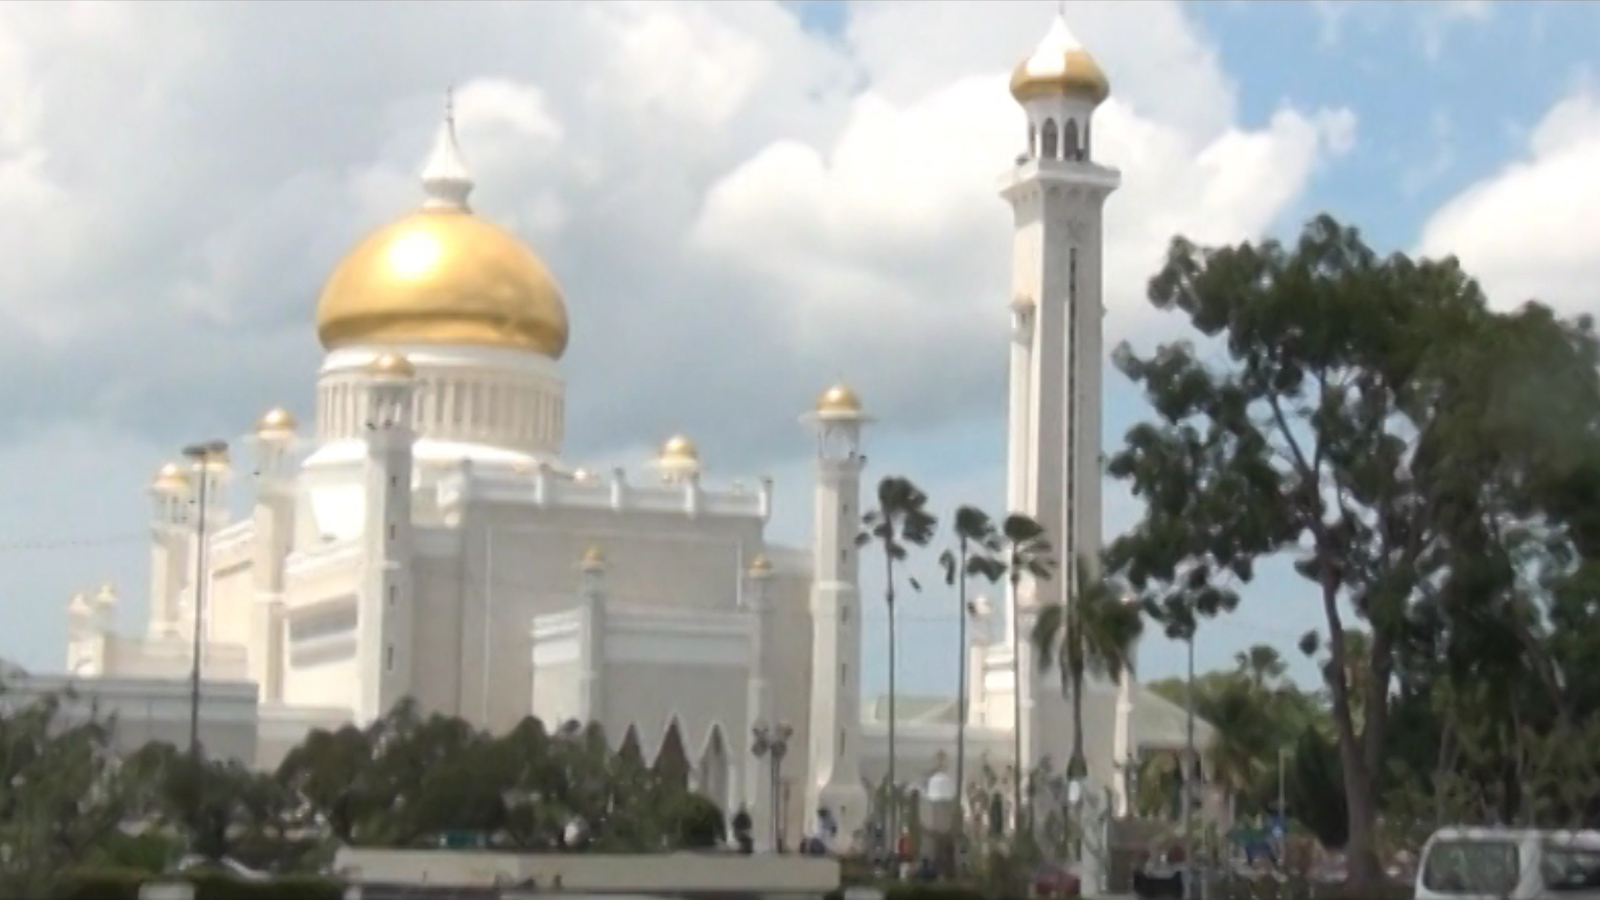 Sultanate of Brunei: spend $40 billion with pleasure - My, Brunei, , Asia, Borneo, Kalimantan, Sultanate, Video, Longpost